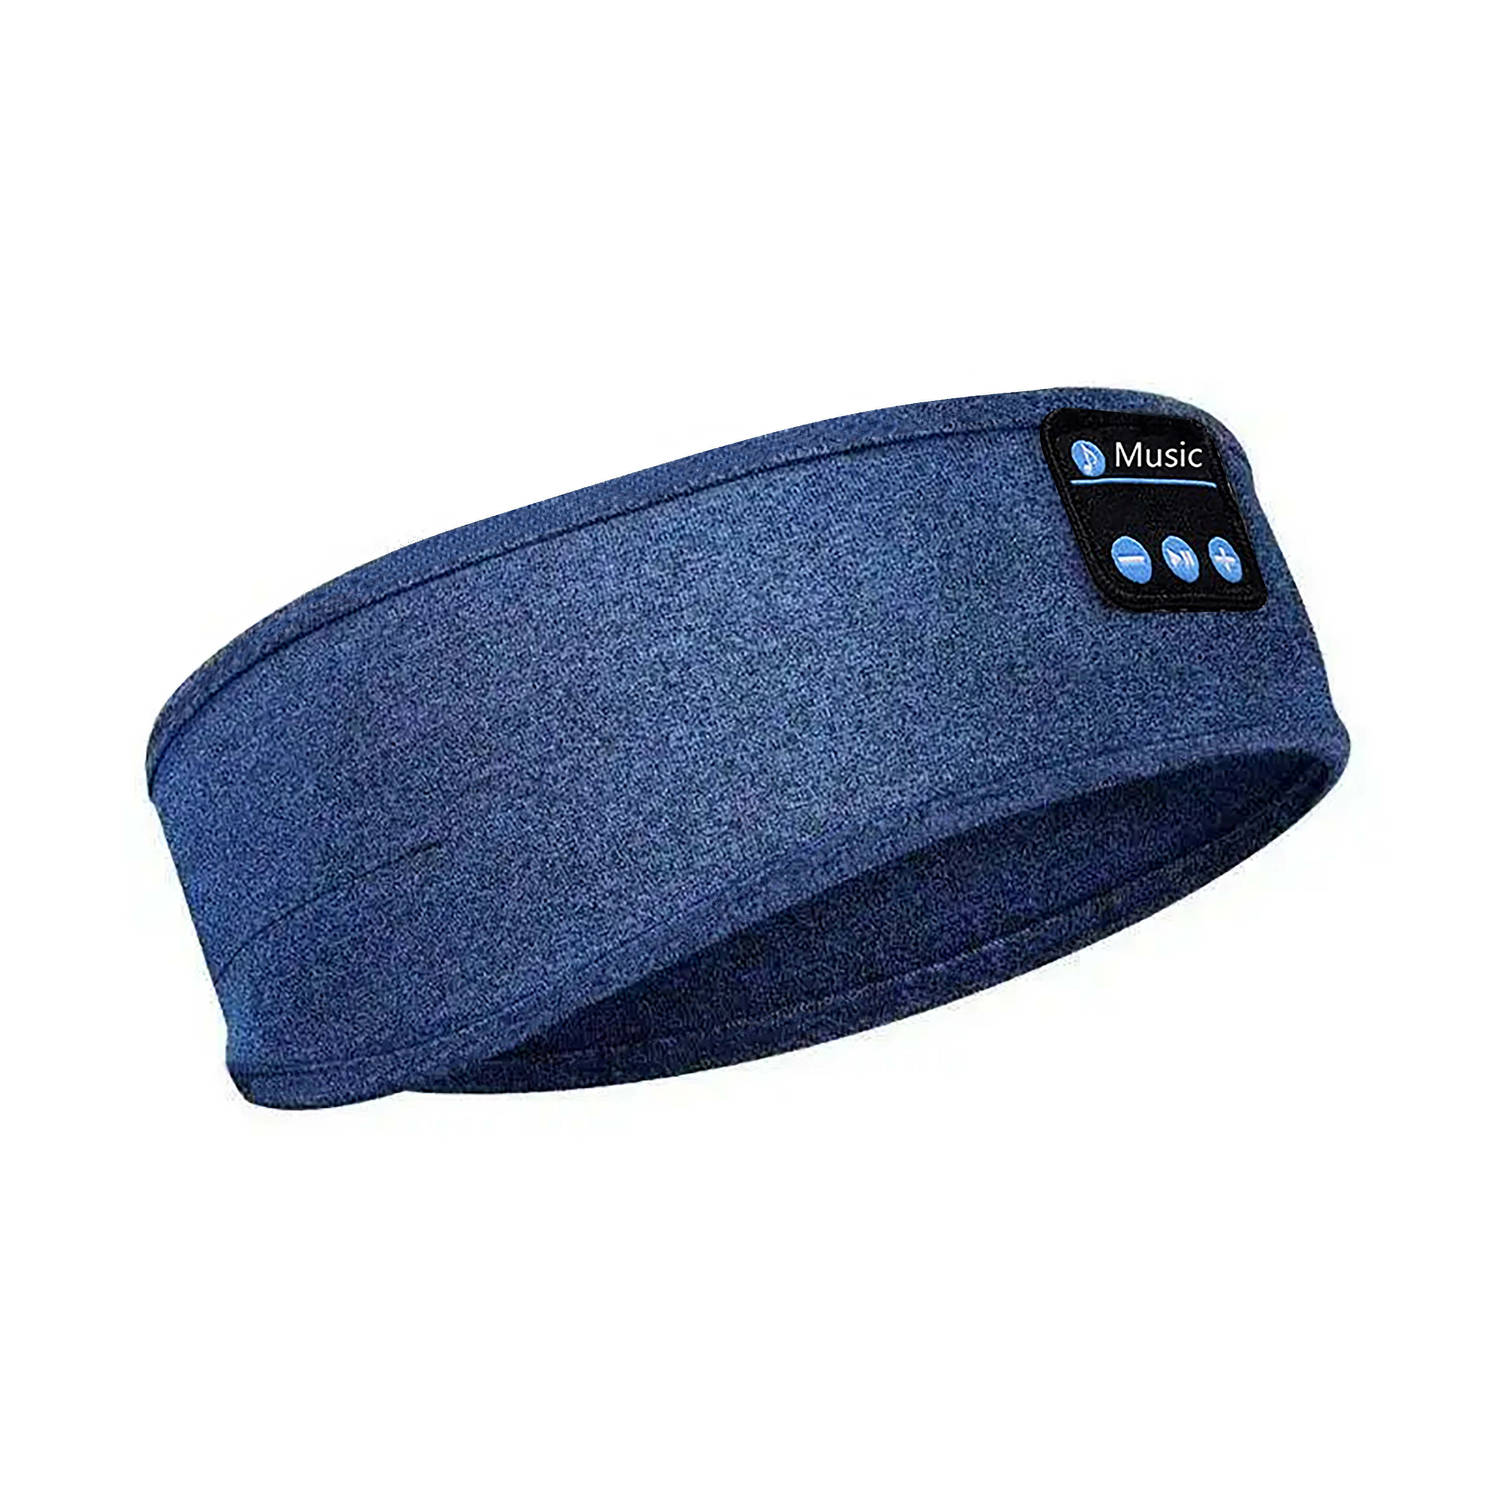 Stole My Day Slaapmasker Bluetooth Draadloze Slaapkoptelefoon Hoofdband USB-C Oplaadbaar Blauw